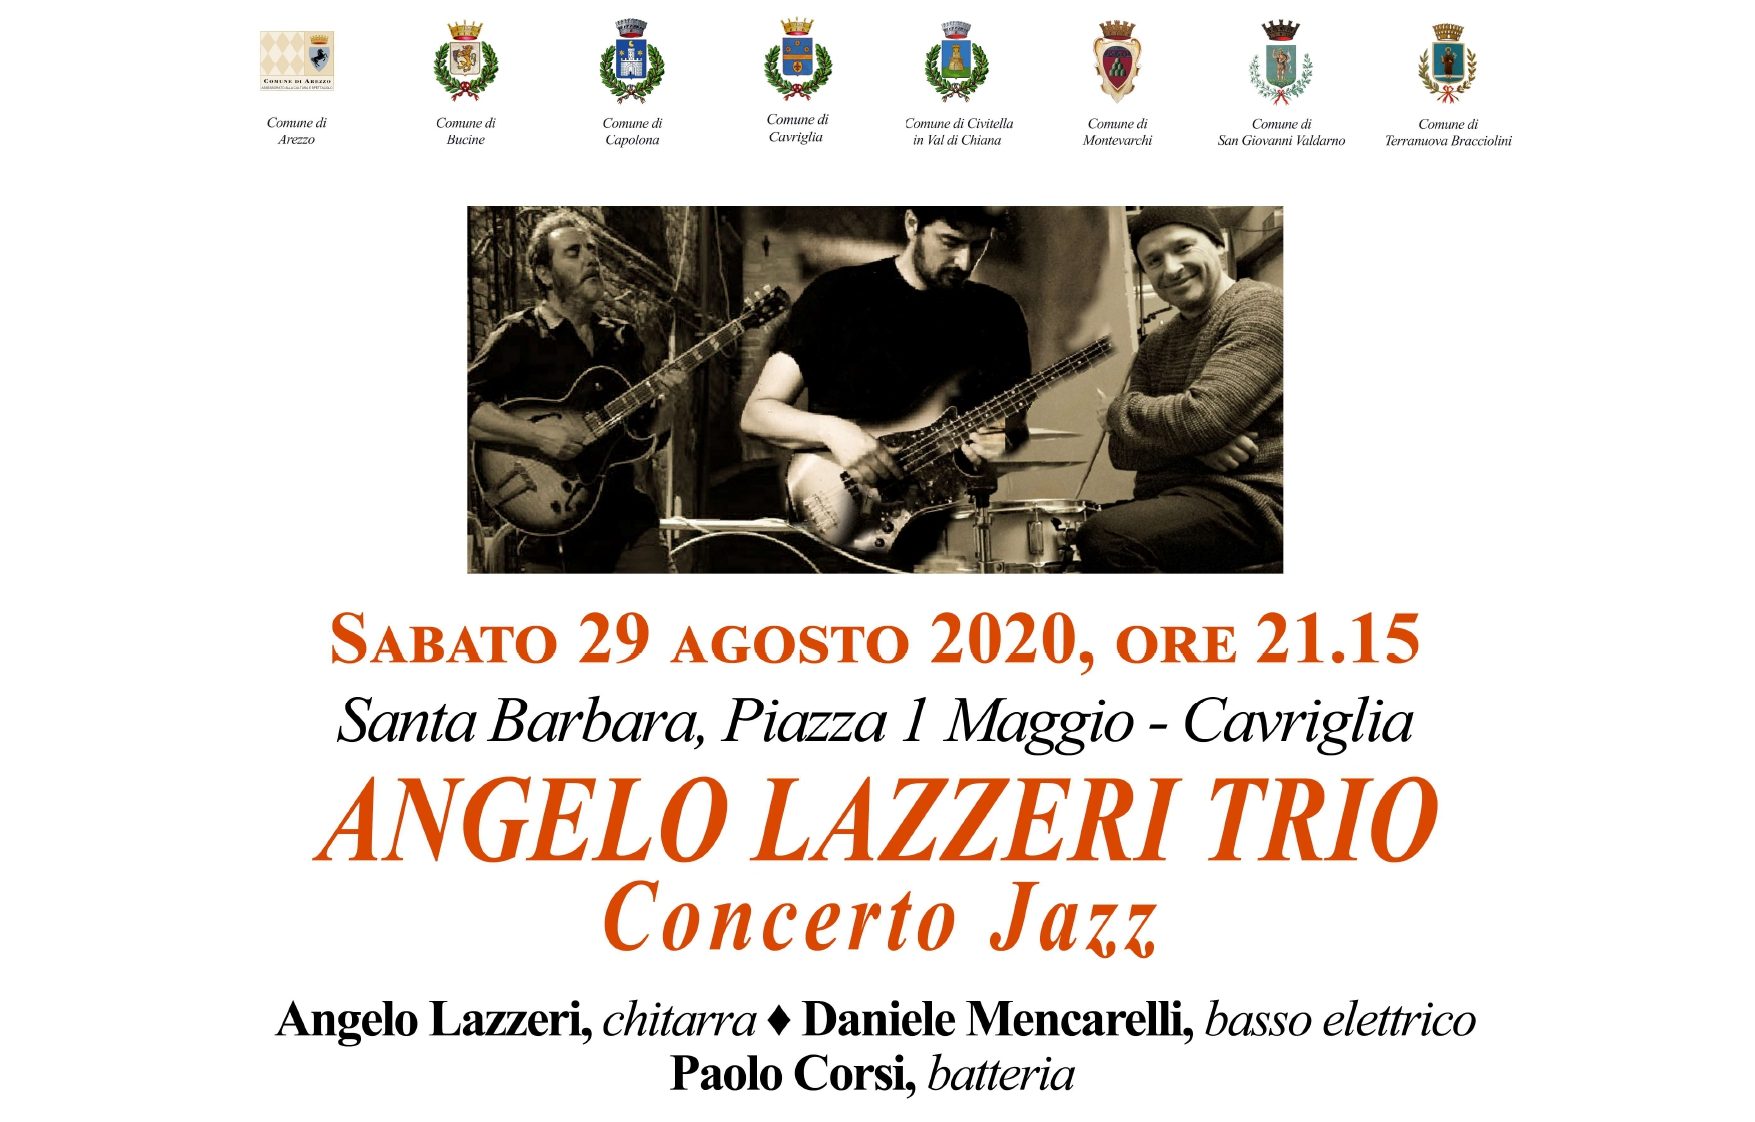 Cavriglia: Trio Jazz Angelo Lazzeri a Santa Barbara per “Terre d’Arezzo Music Festival”